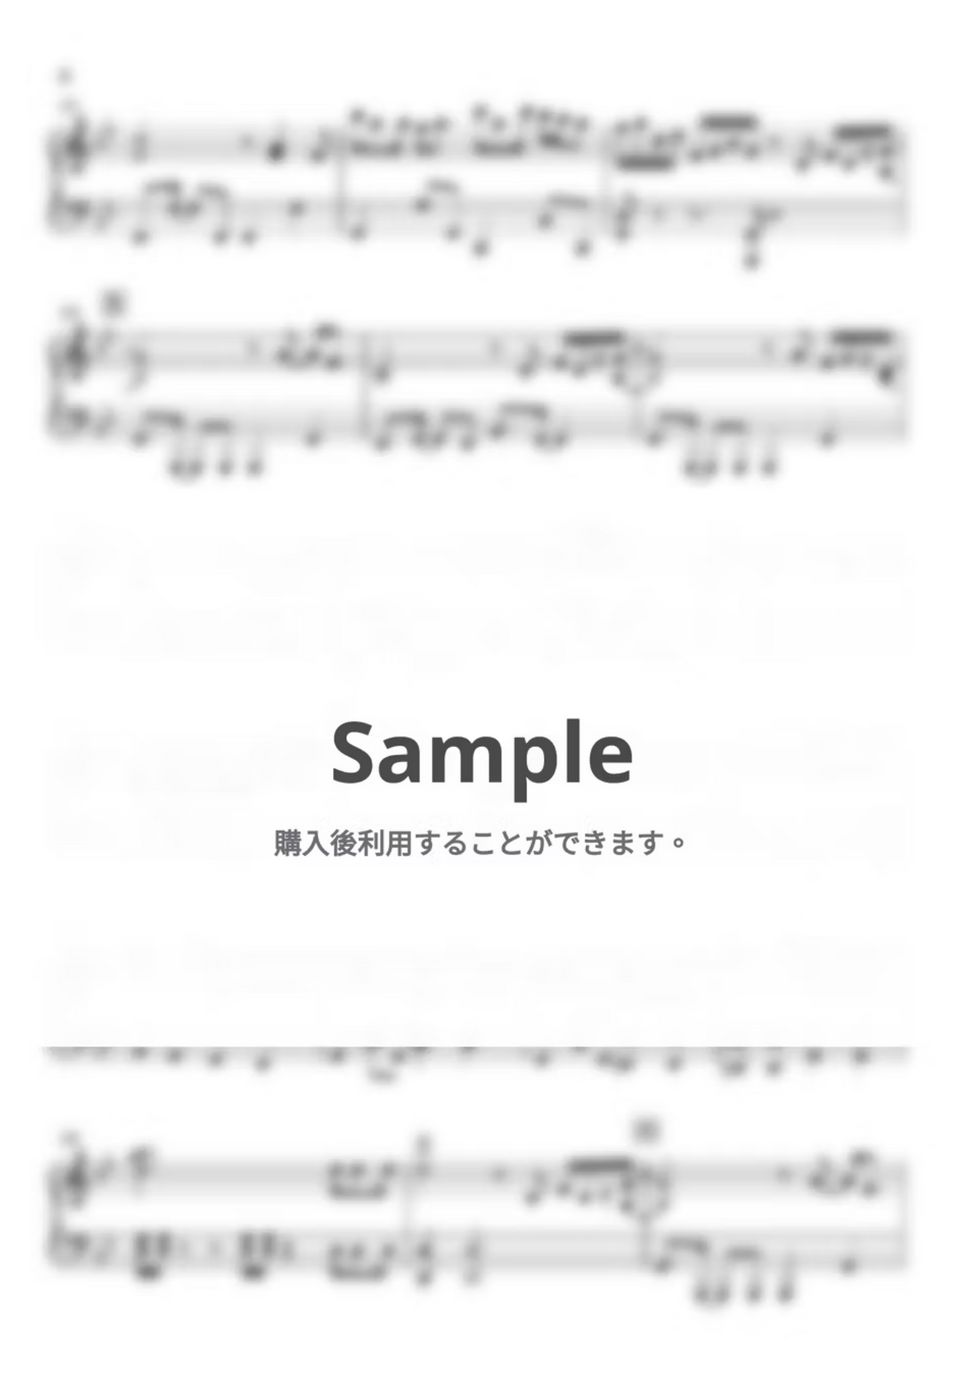 大野雄二 - ルパン三世メドレー(’78〜80) (ピアノ楽譜 / 中級) by Piano Lovers. jp